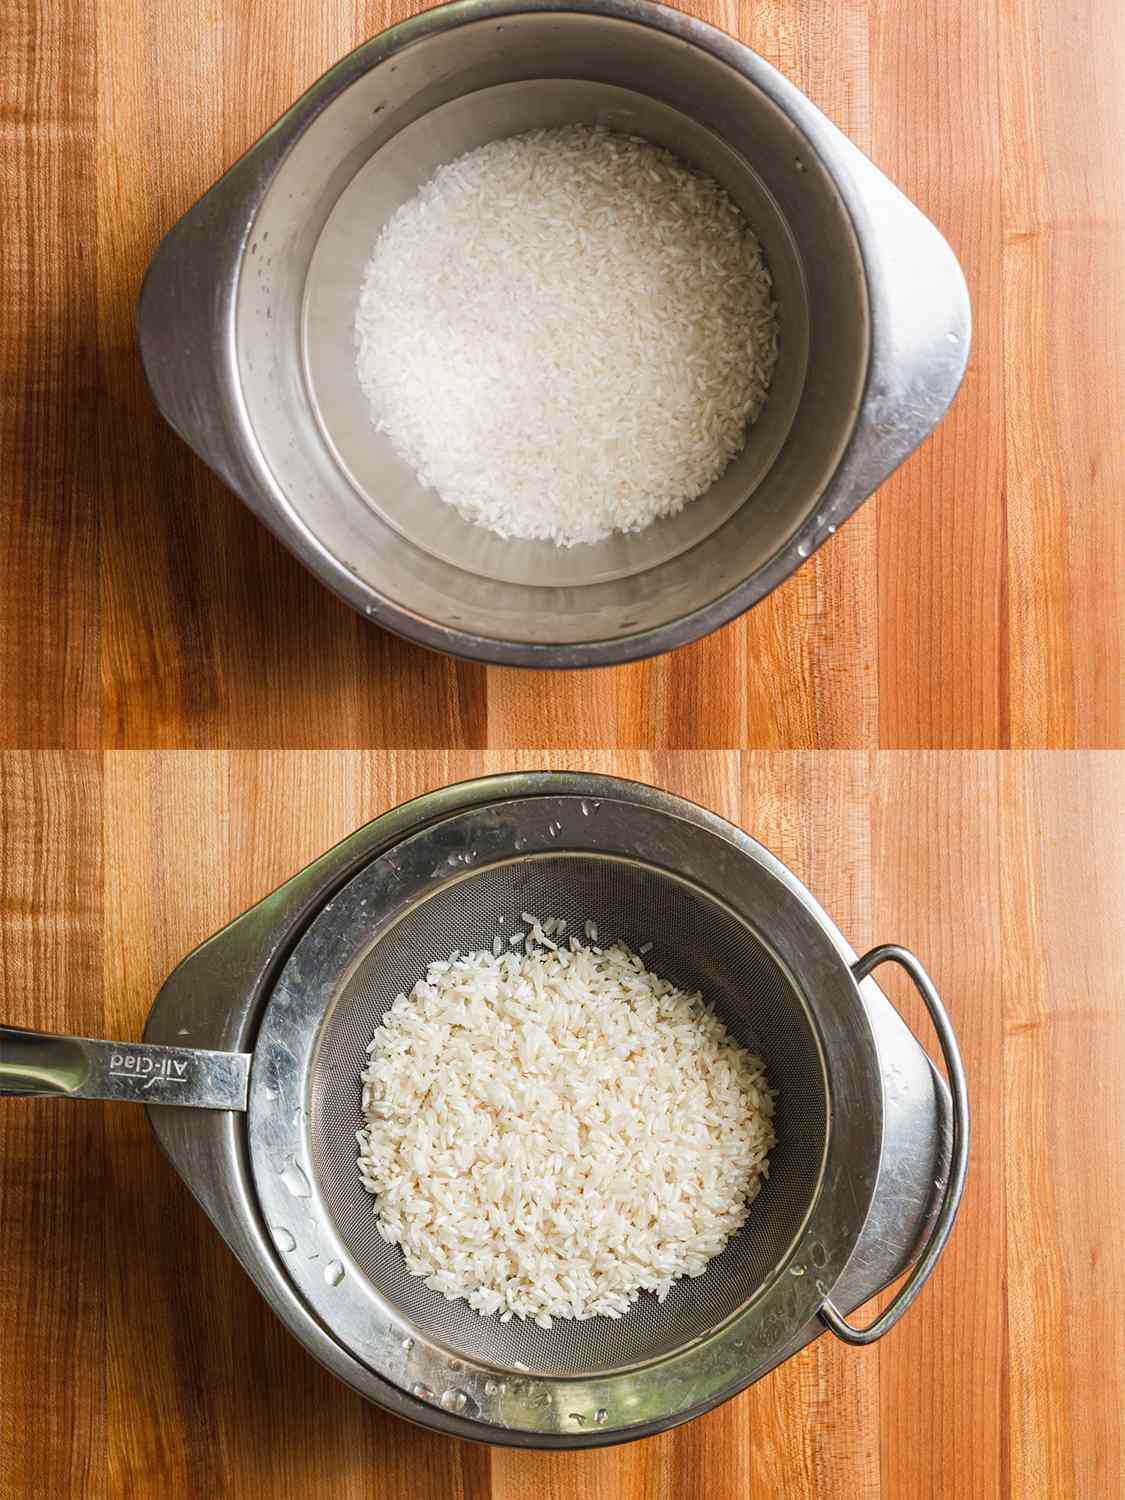 两幅图像拼贴。上图:浸泡在金属碗里的米饭。下图:正在过滤的大米